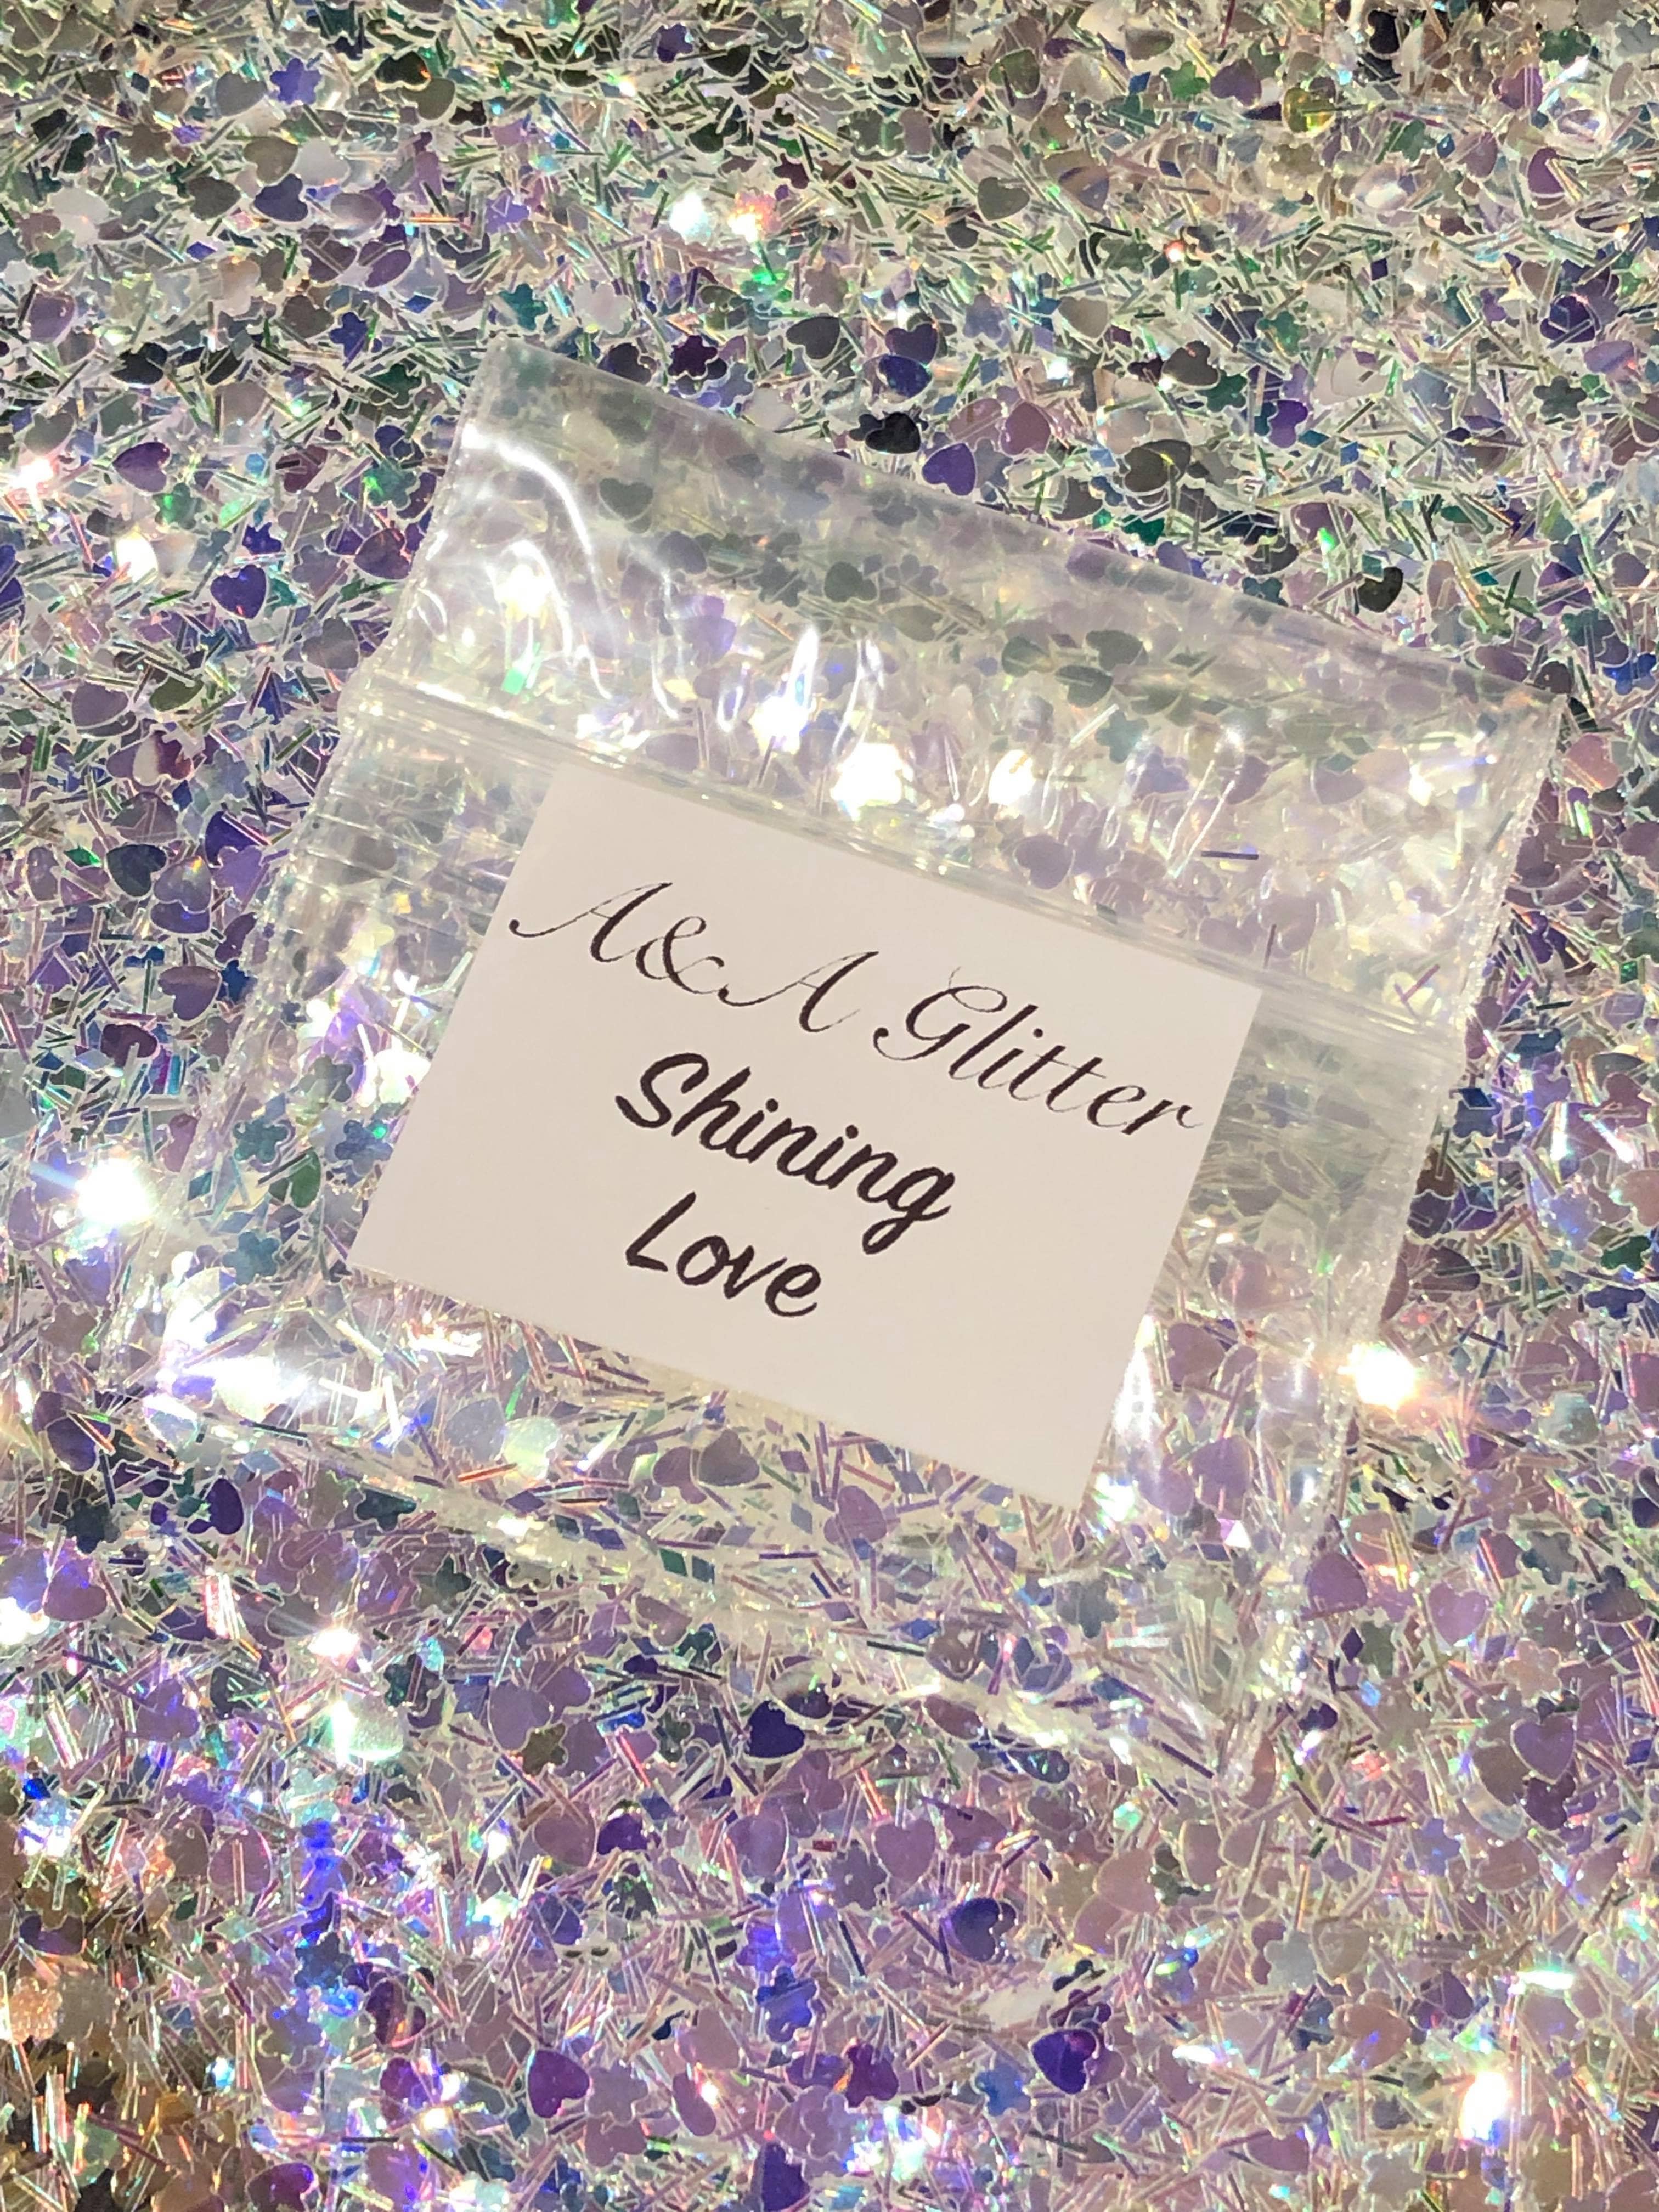 Shining Love - A&A Glitter